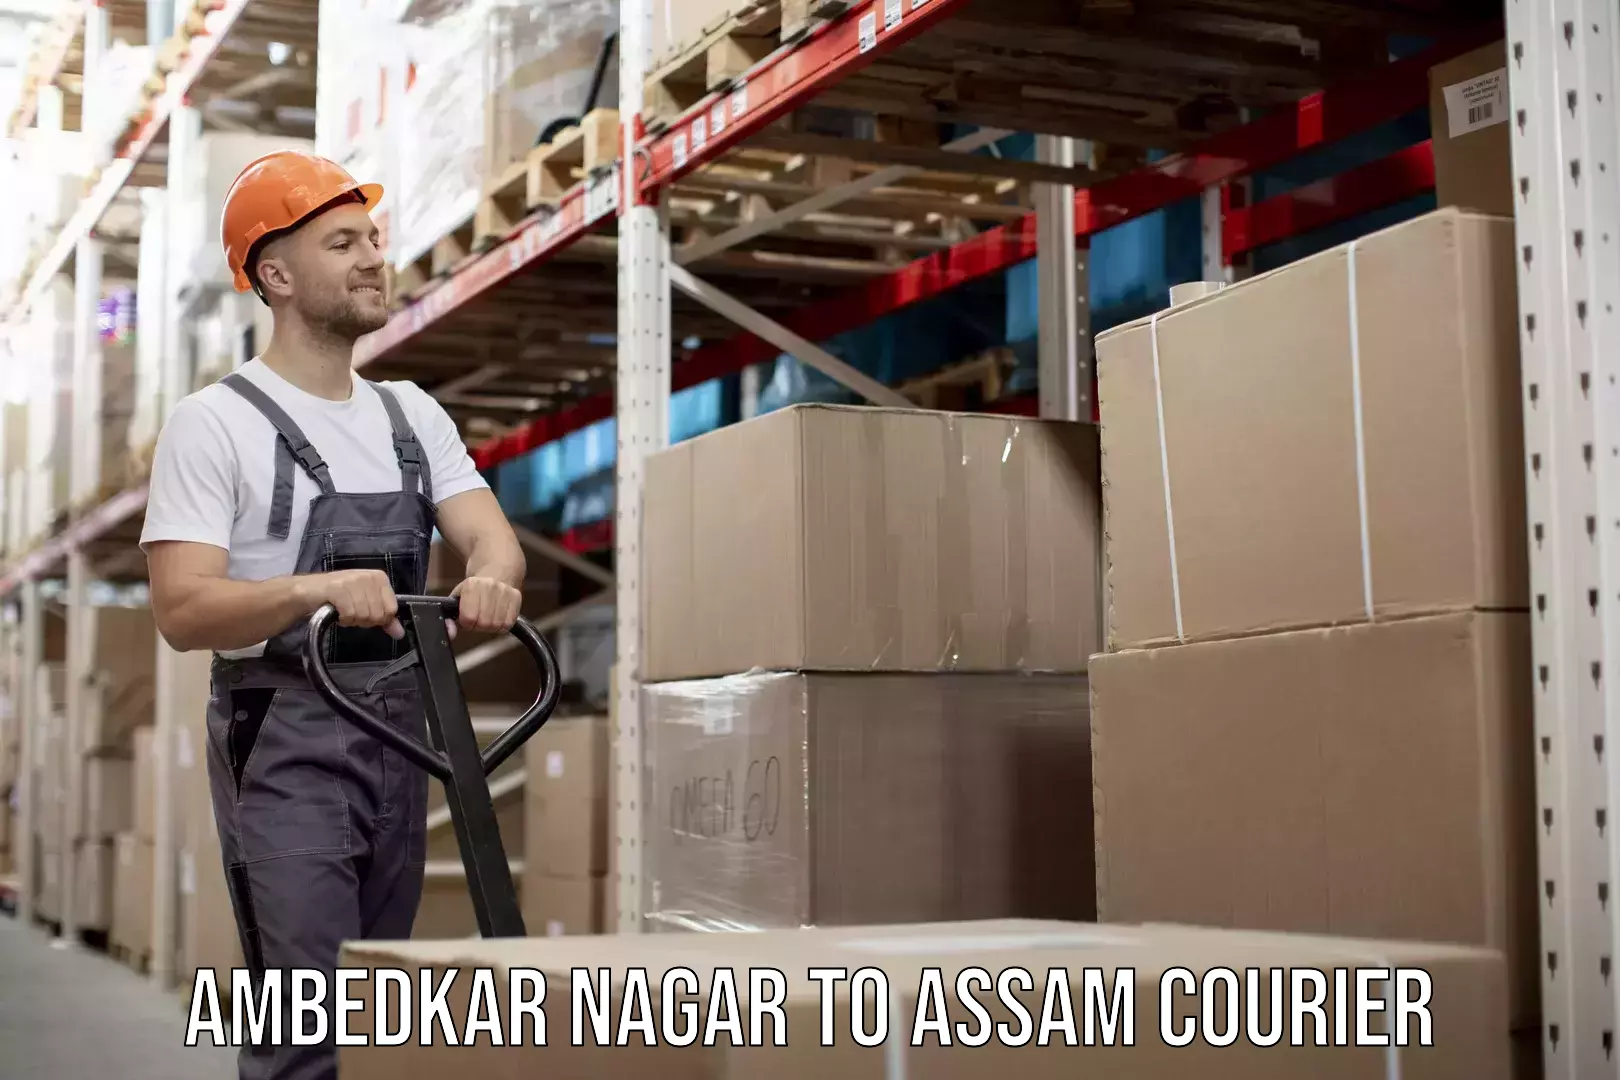 Global courier networks Ambedkar Nagar to Assam